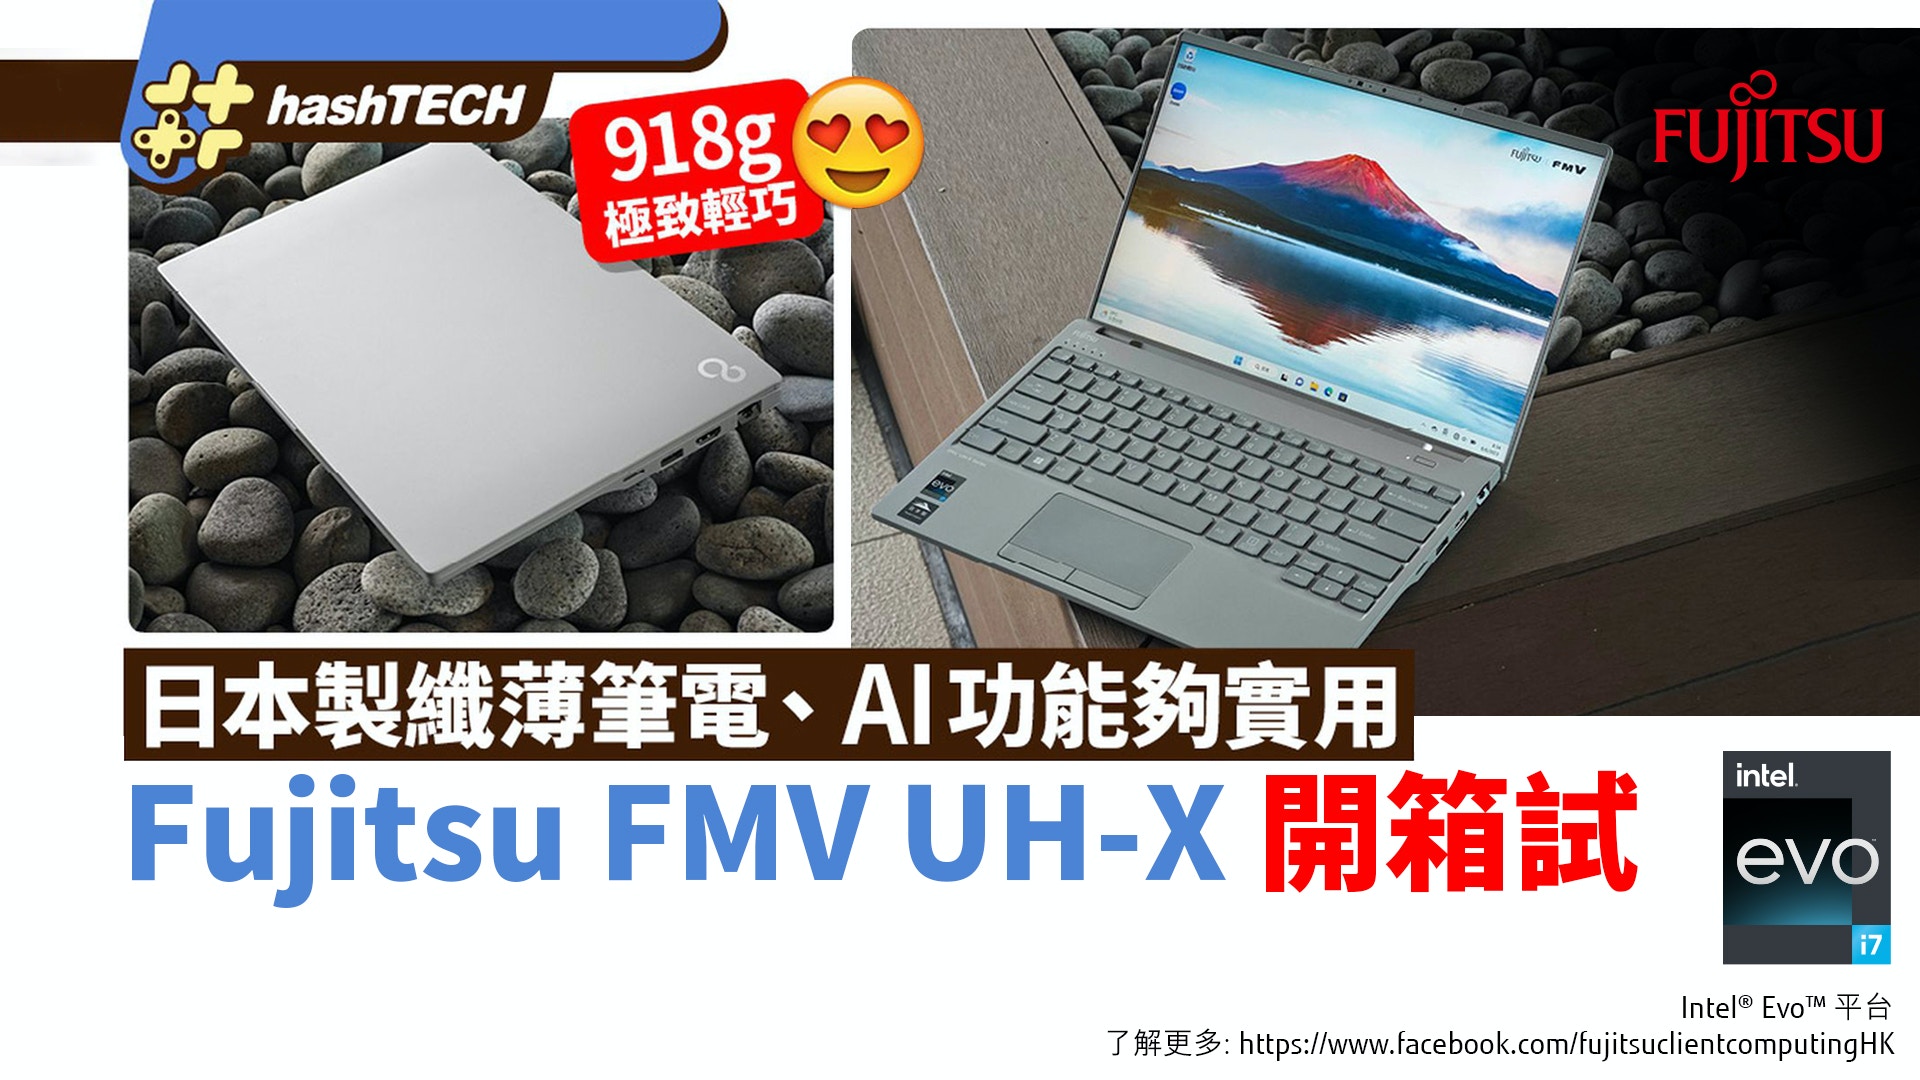 Fujitsu FMV UH-X日本製筆電實試｜918g極致纖巧、AI功能夠實用｜數碼生活